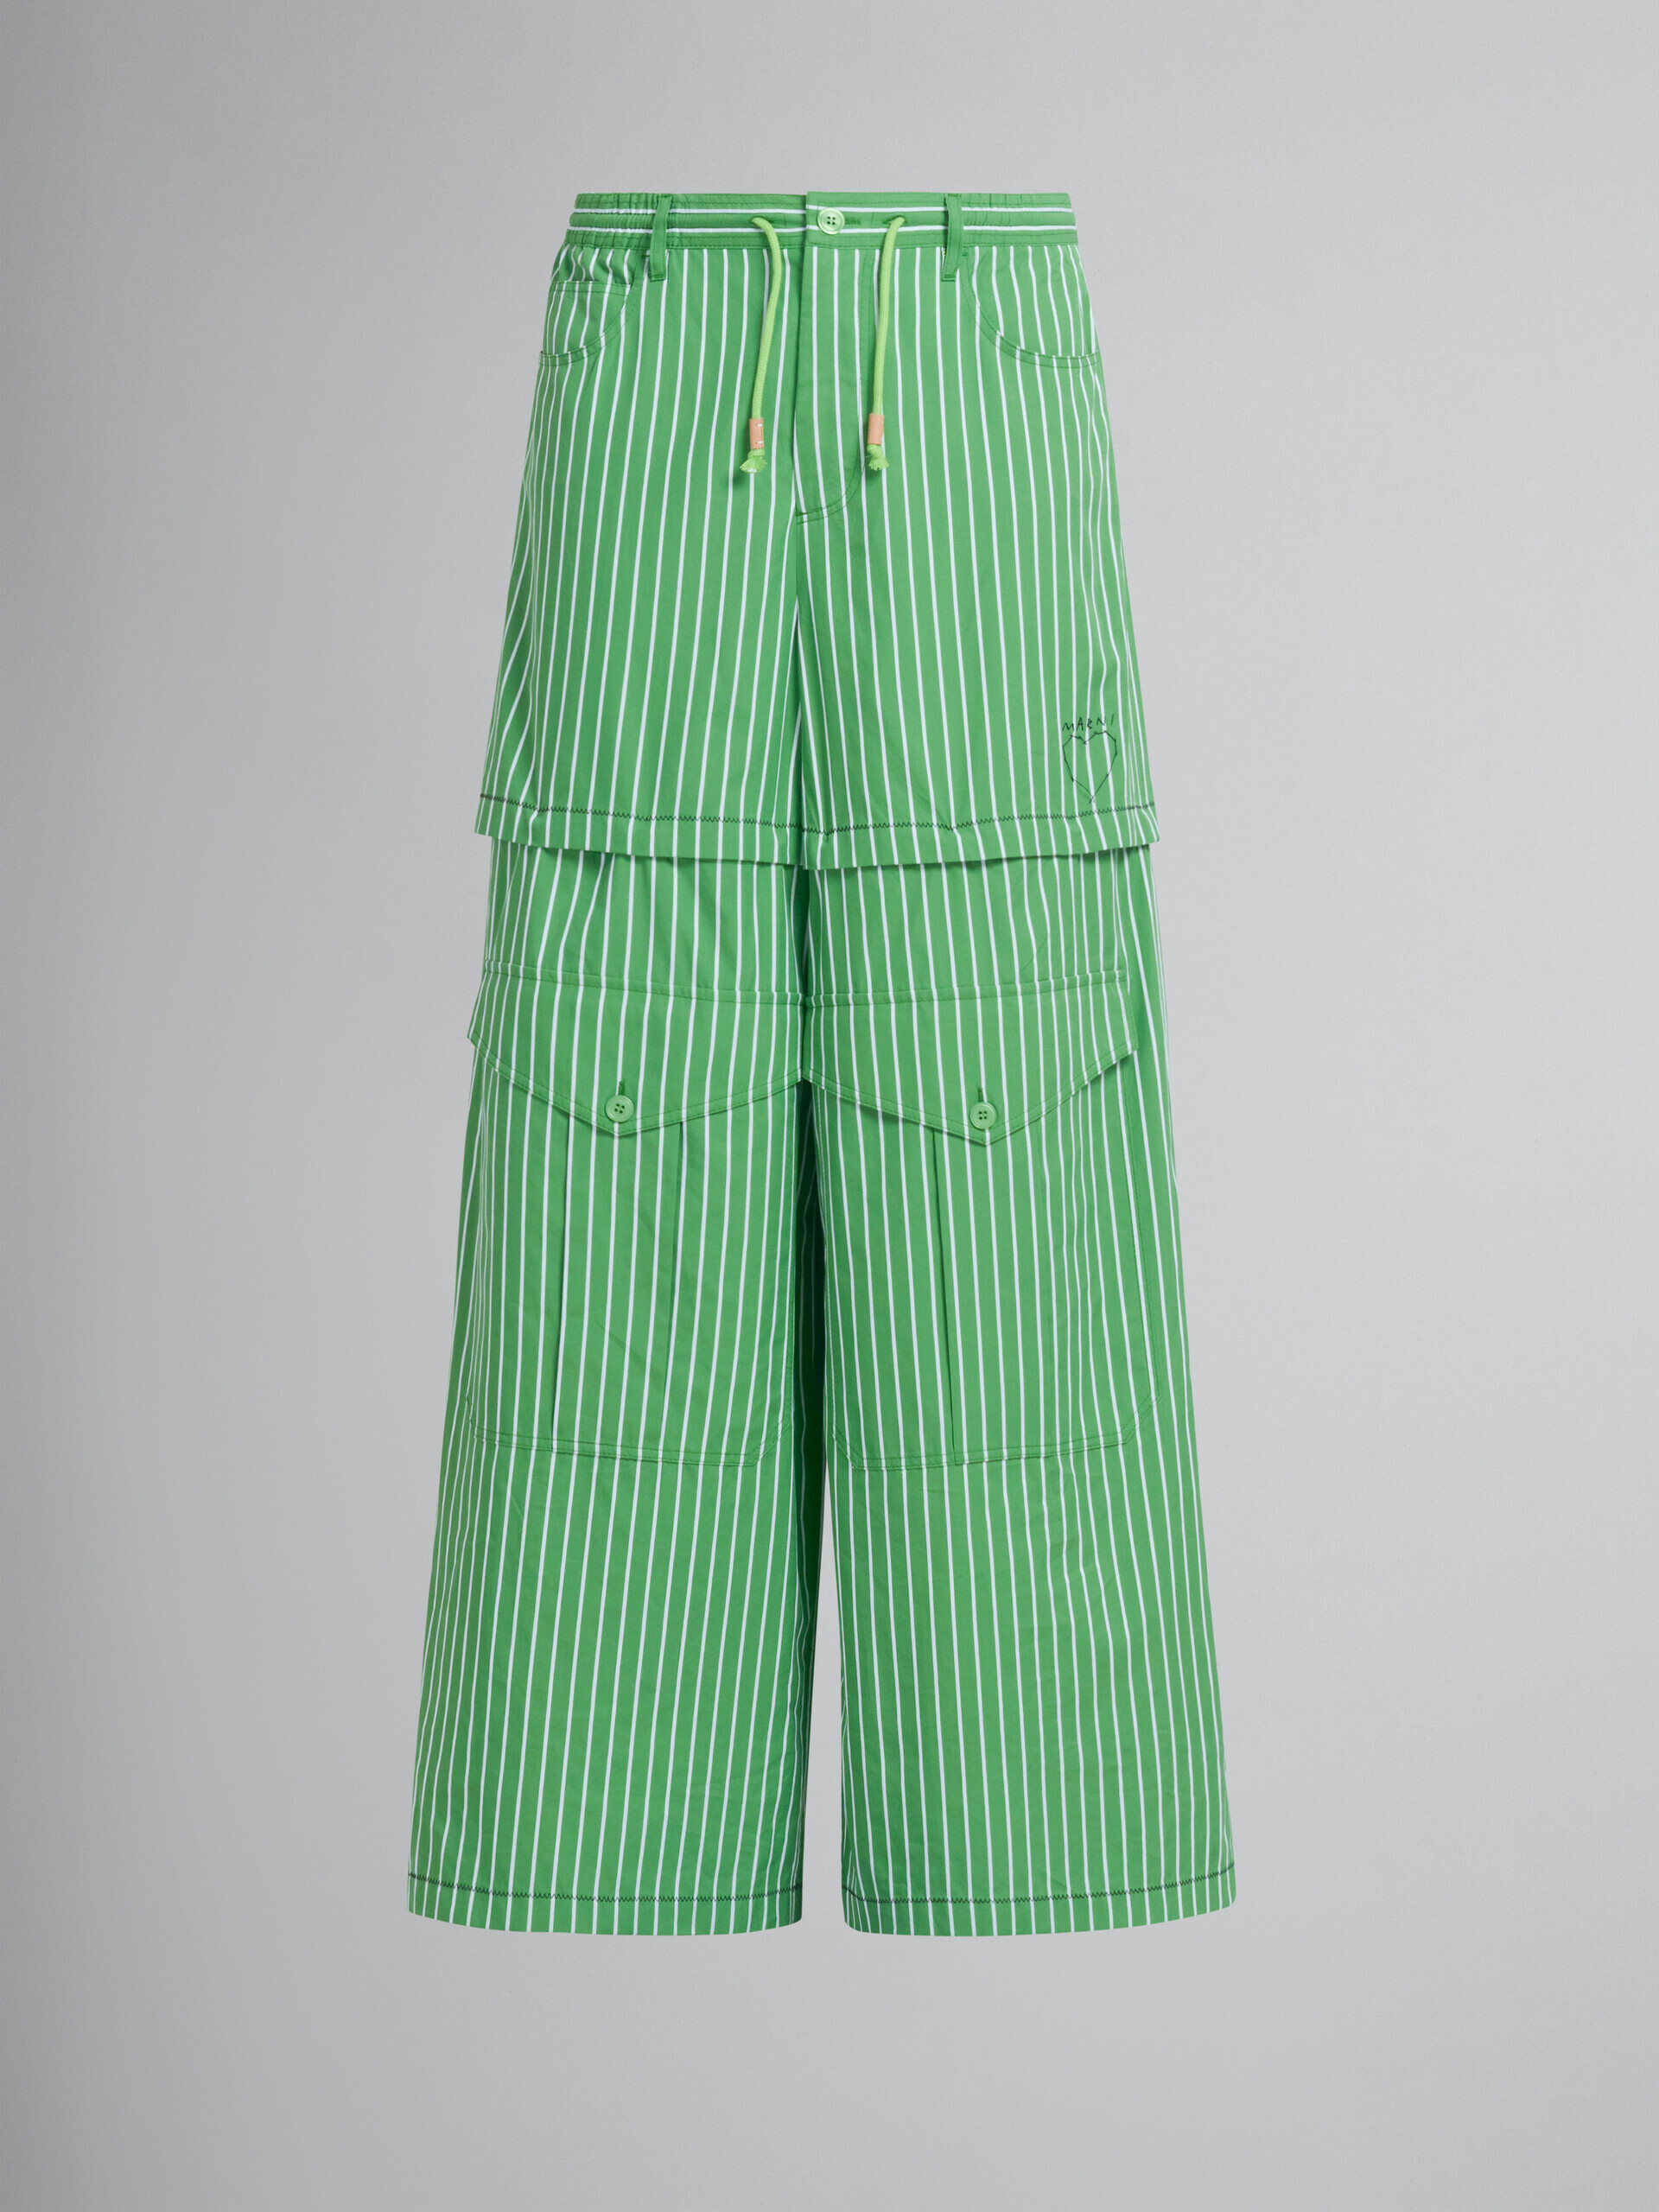 Pantaloni cargo a righe in cotone biologico verde - Pantaloni - Image 2